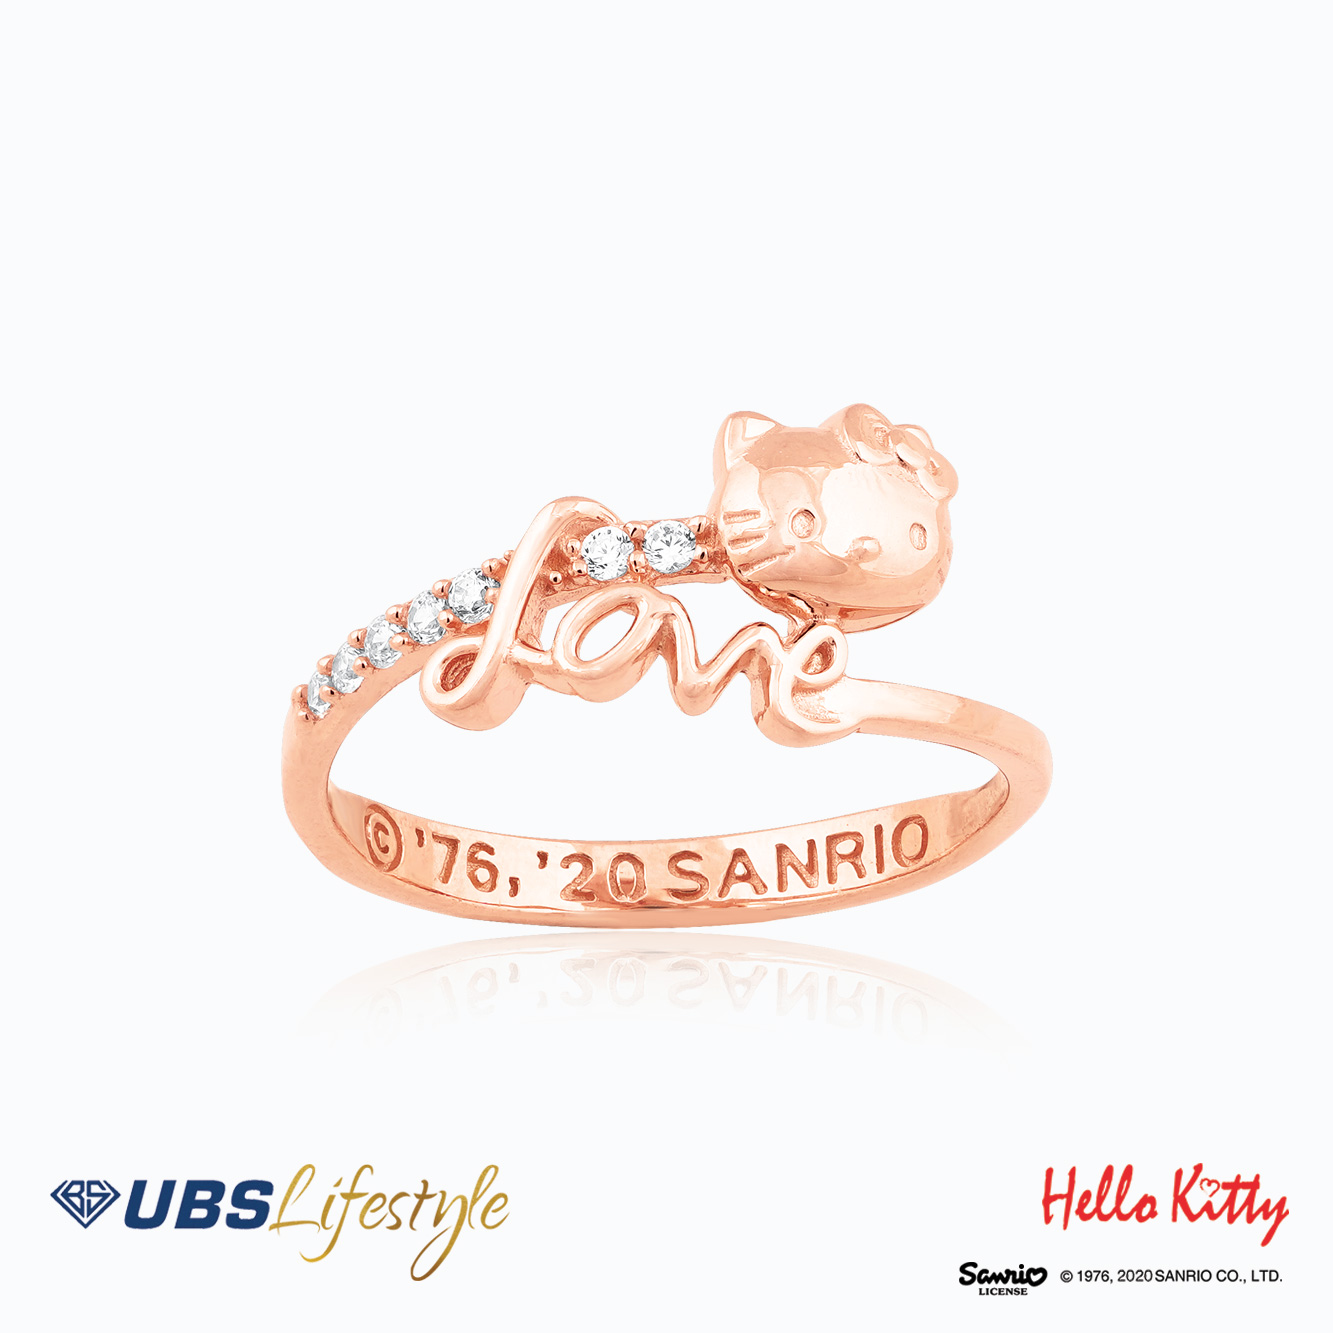 UBS Cincin Emas Sanrio Hello Kitty - Ccz0024R - 17K